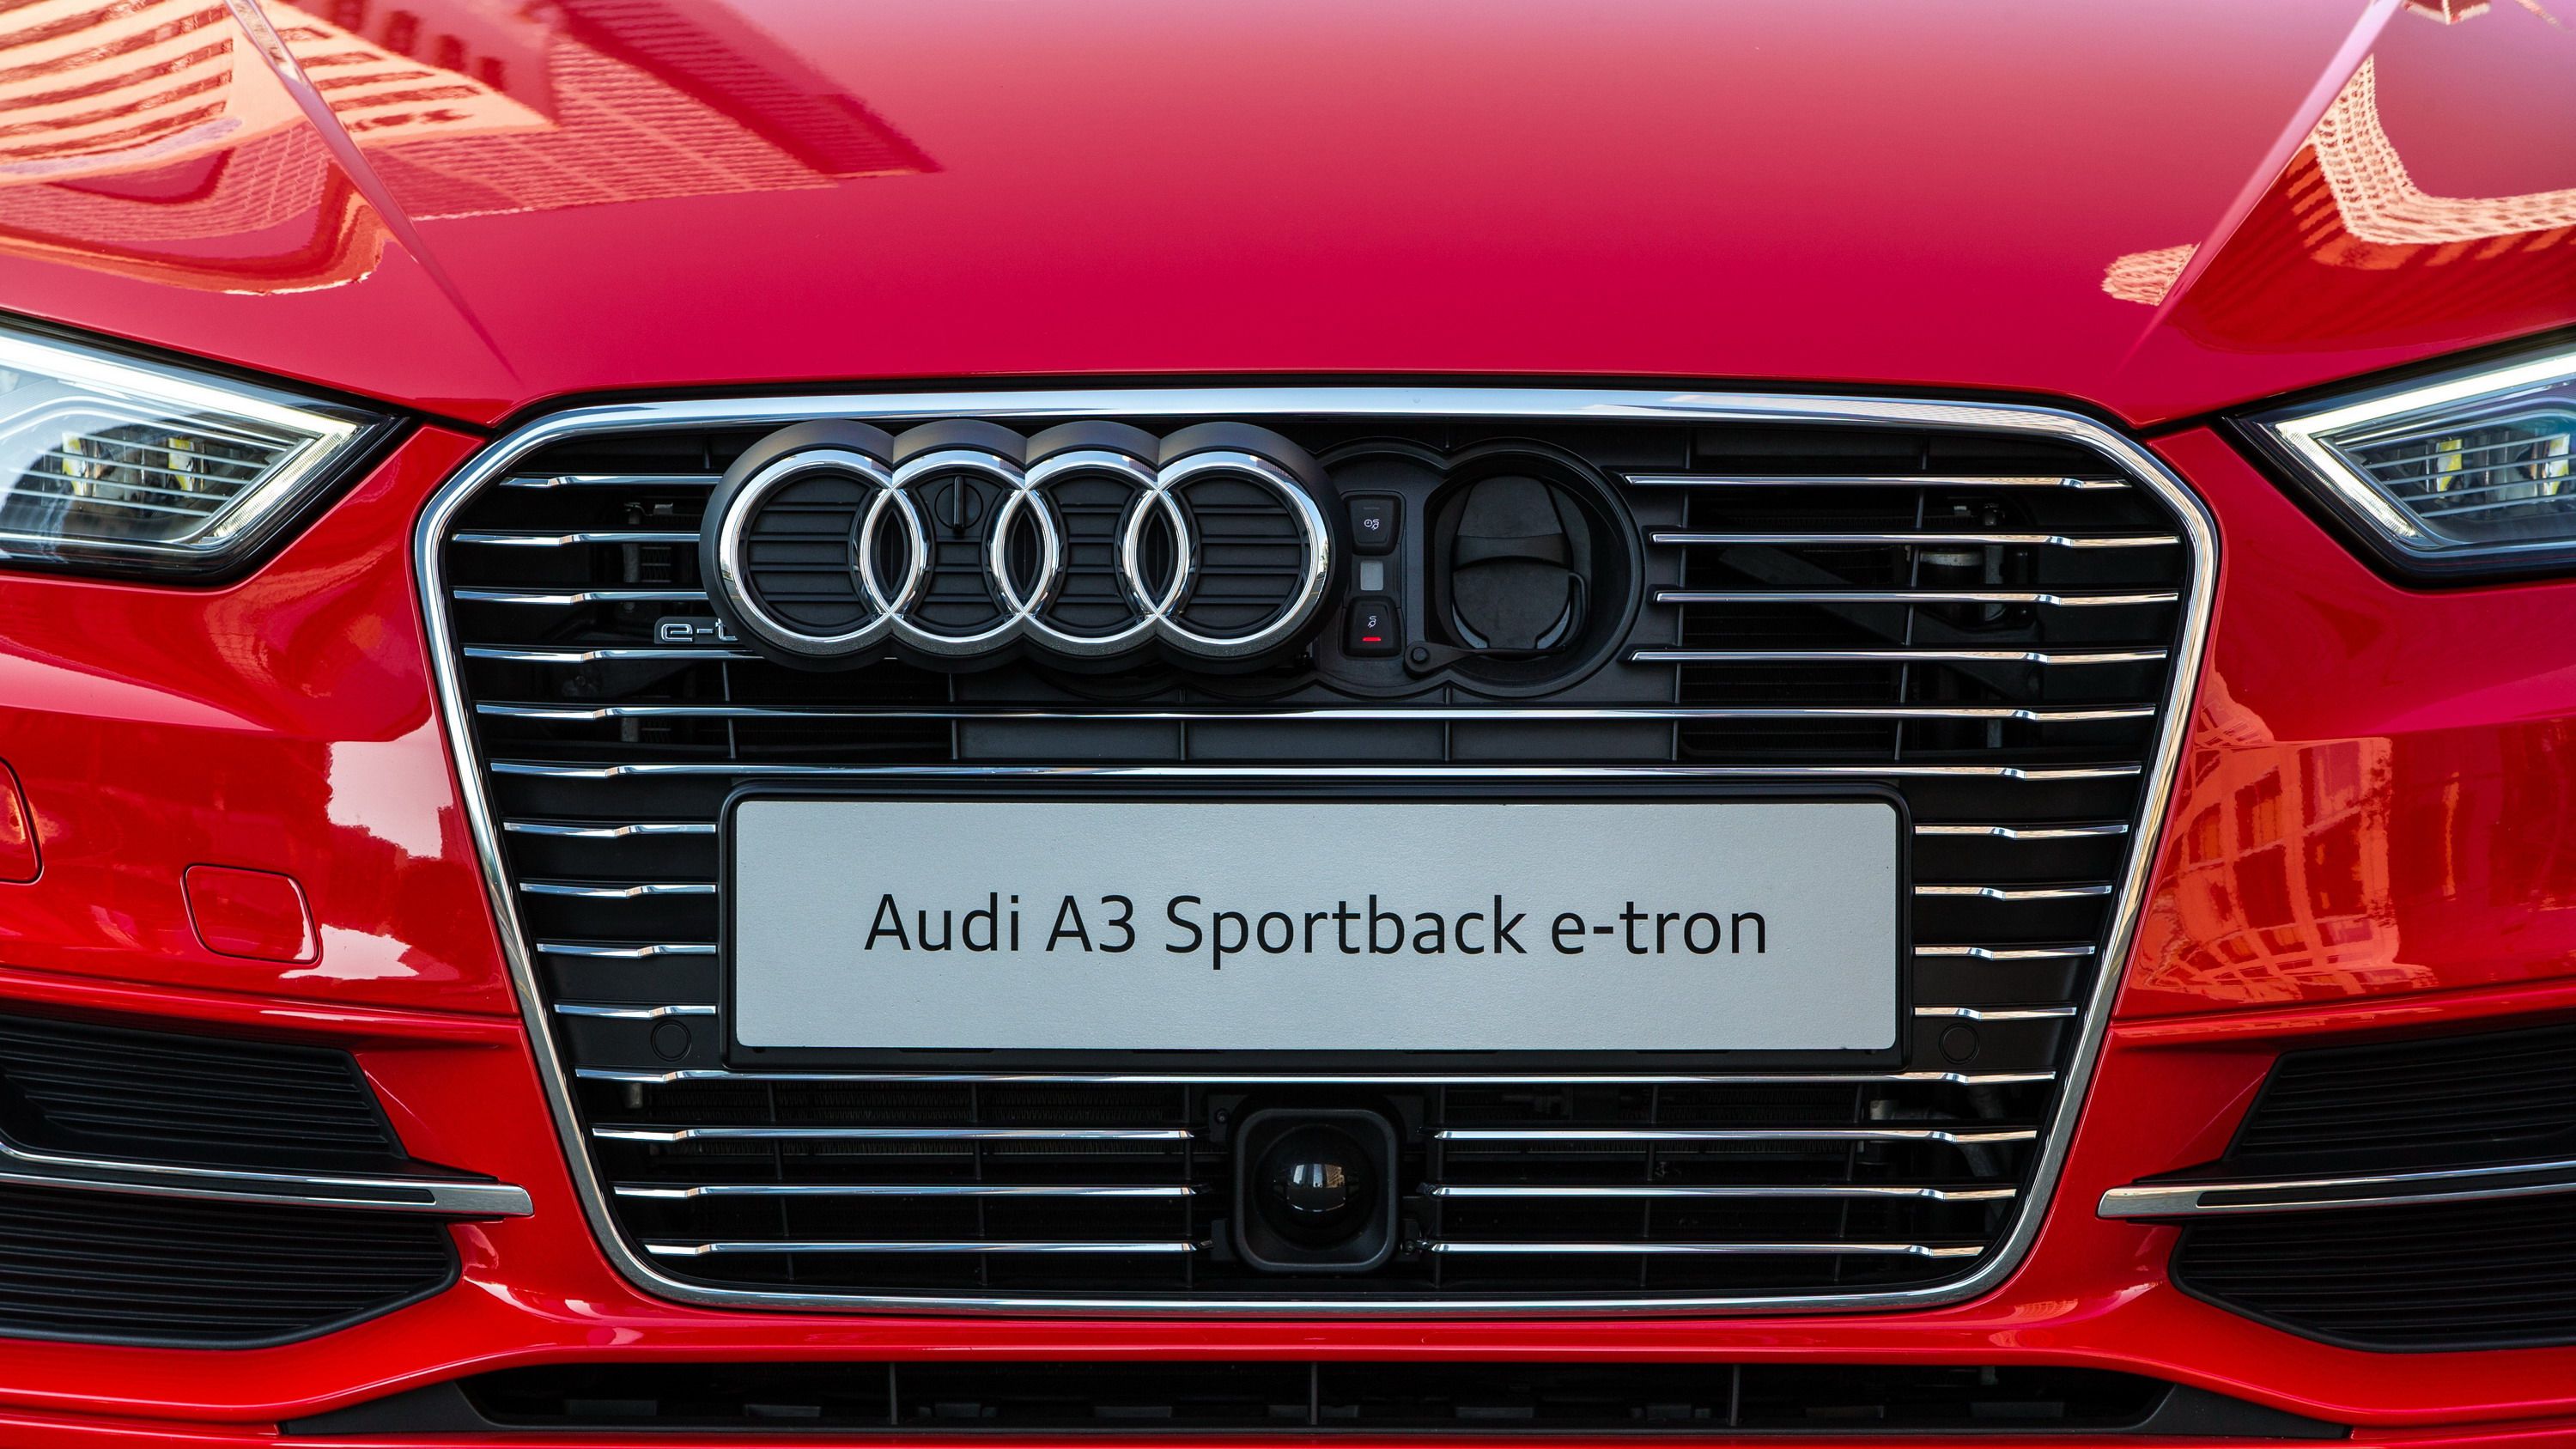 2016 - 2017 Audi A3 Sportback e-tron